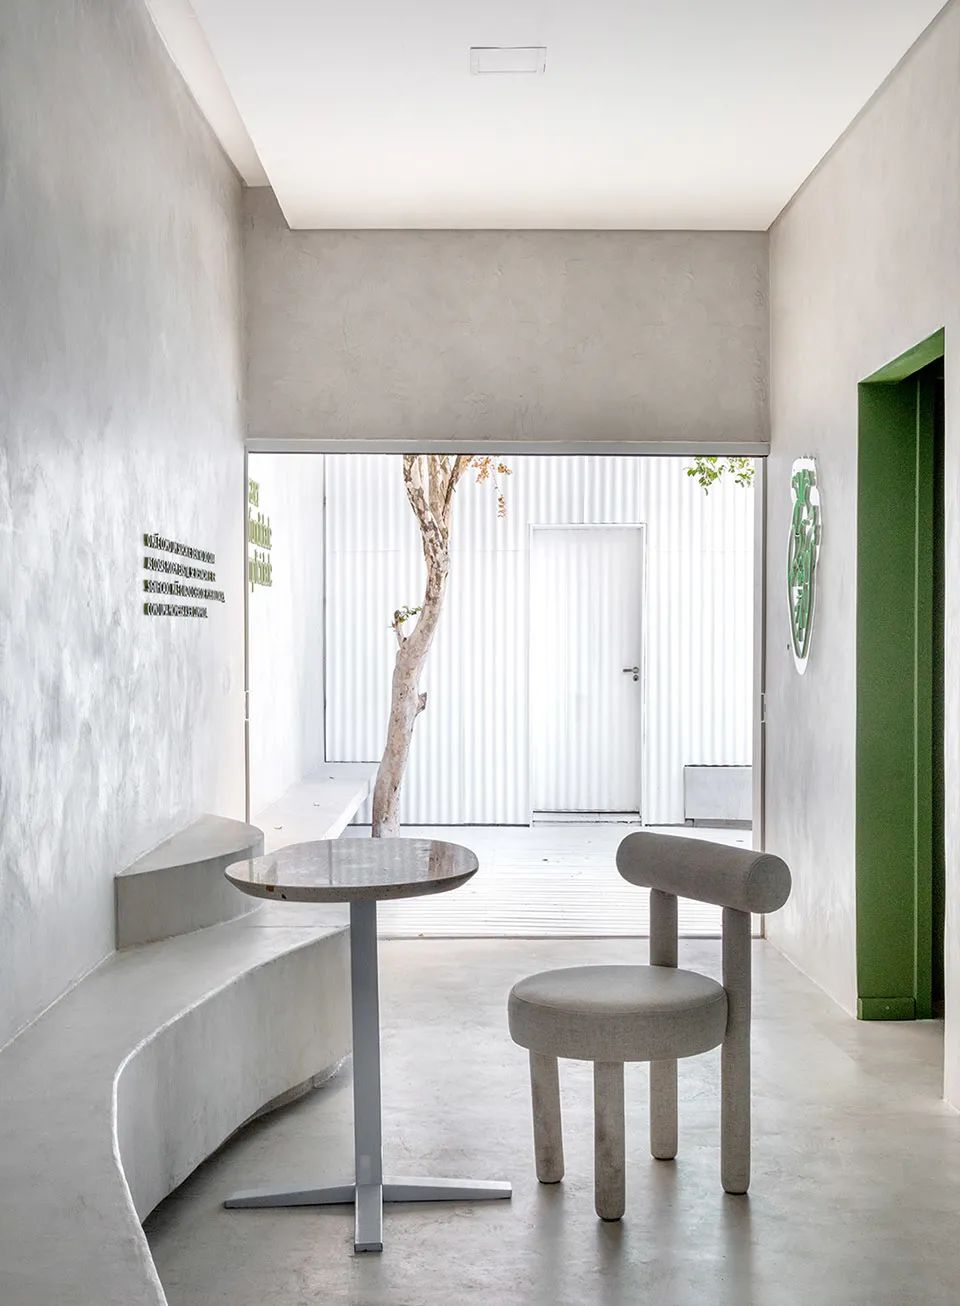 由室內望向庭院 巴西抹茶咖啡店室內設計 Brazeil matcharia Green Blood interior design／Studio Guilherme Garcia